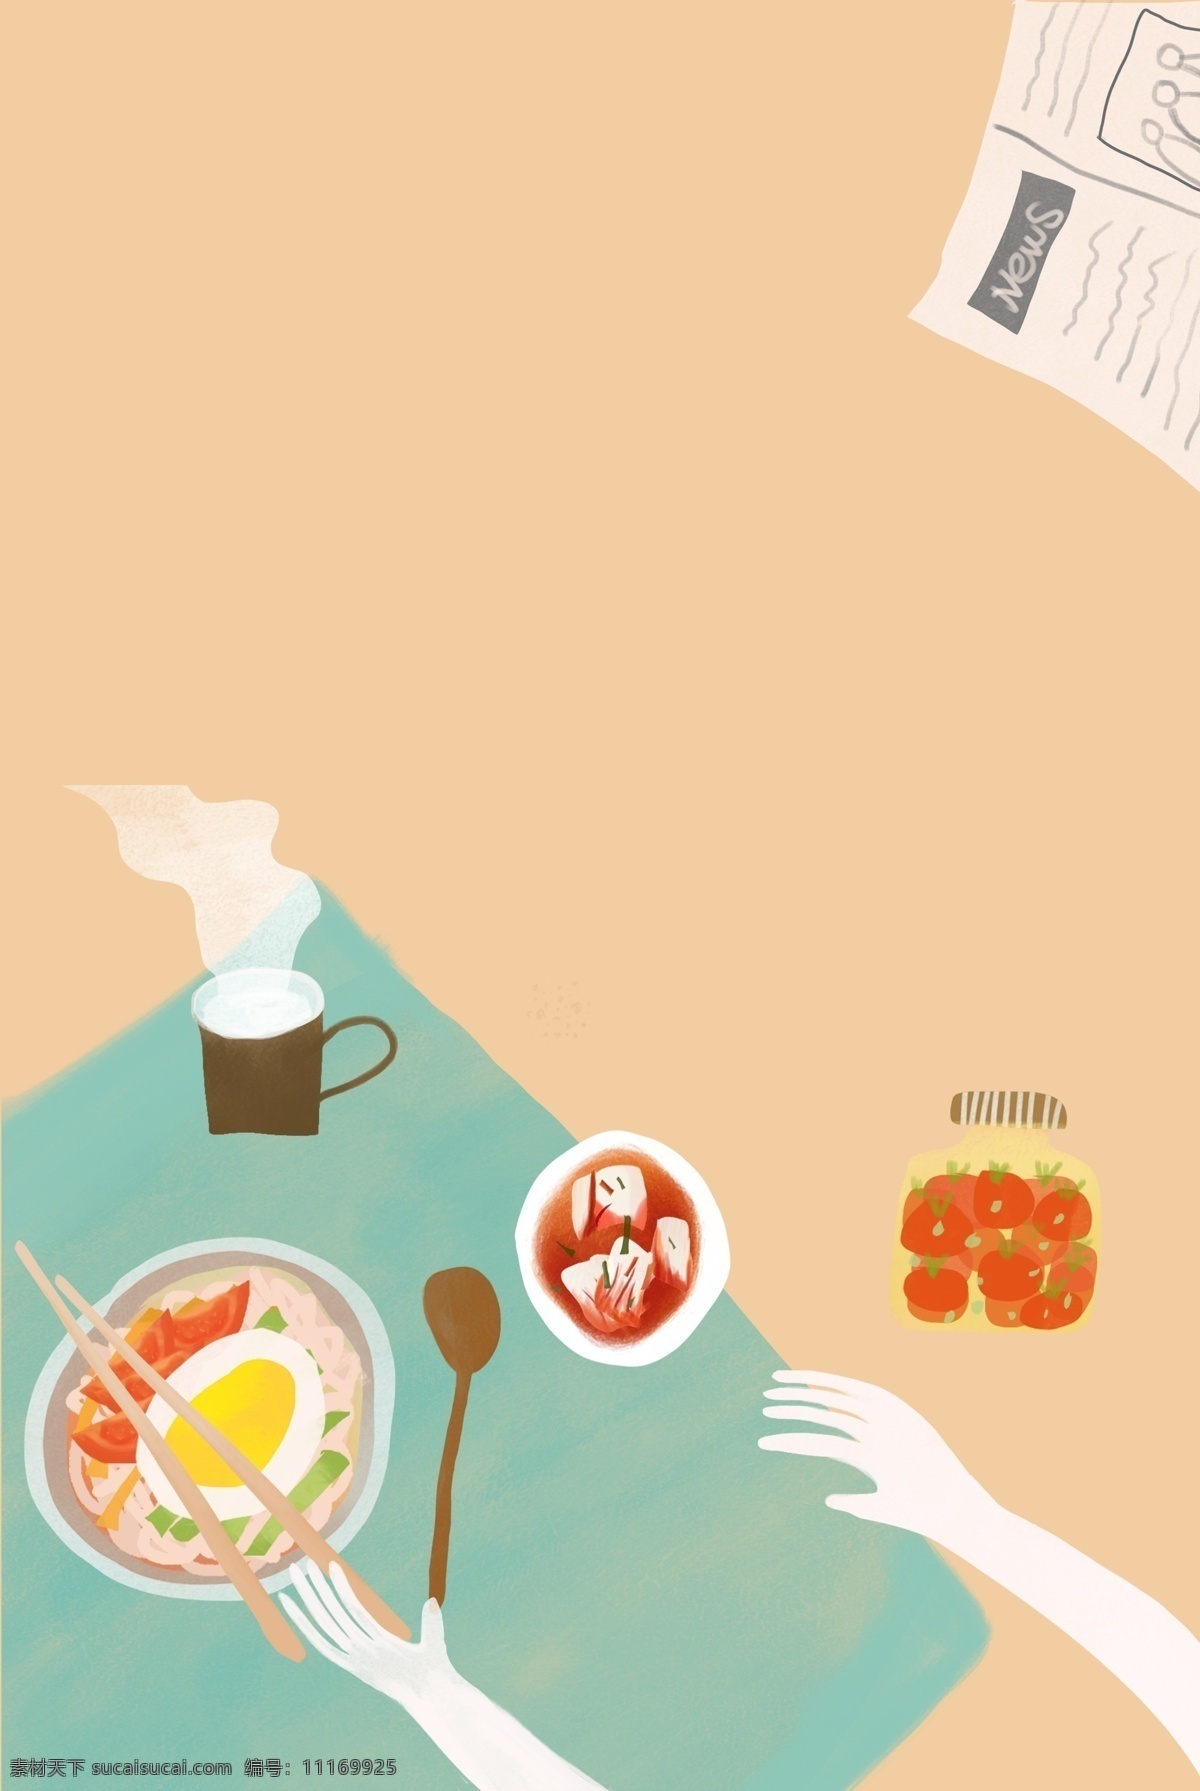 美食 早餐 创意 插画 海报 假日 时光 美式 家居 插画风 促销海报